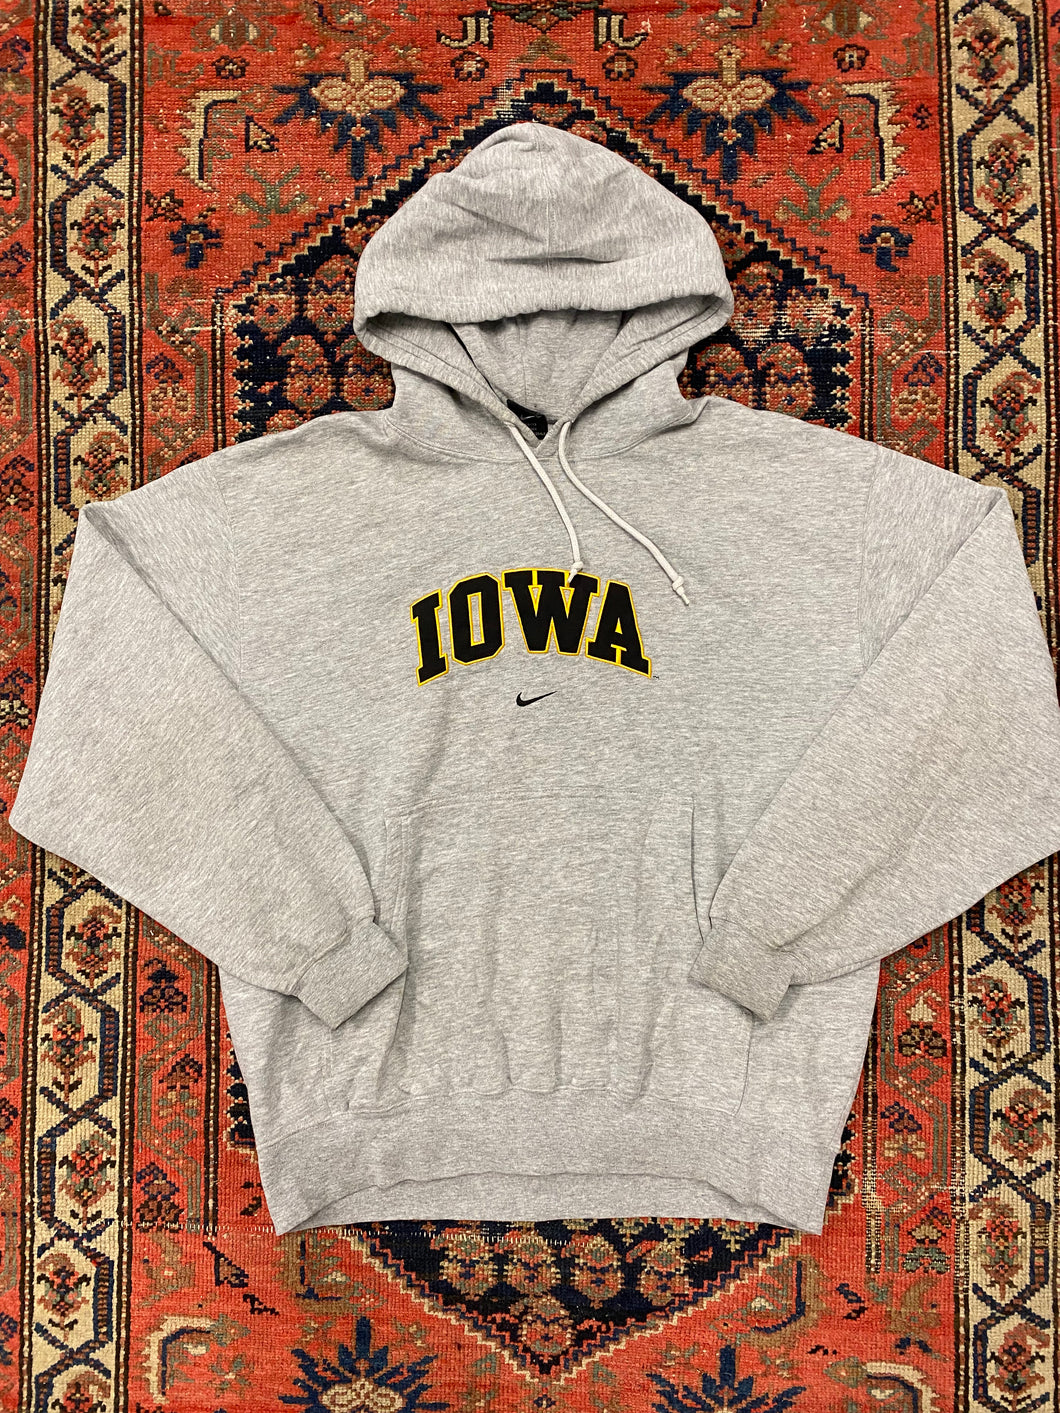 Vintage Iowa Nike Hoodie - L